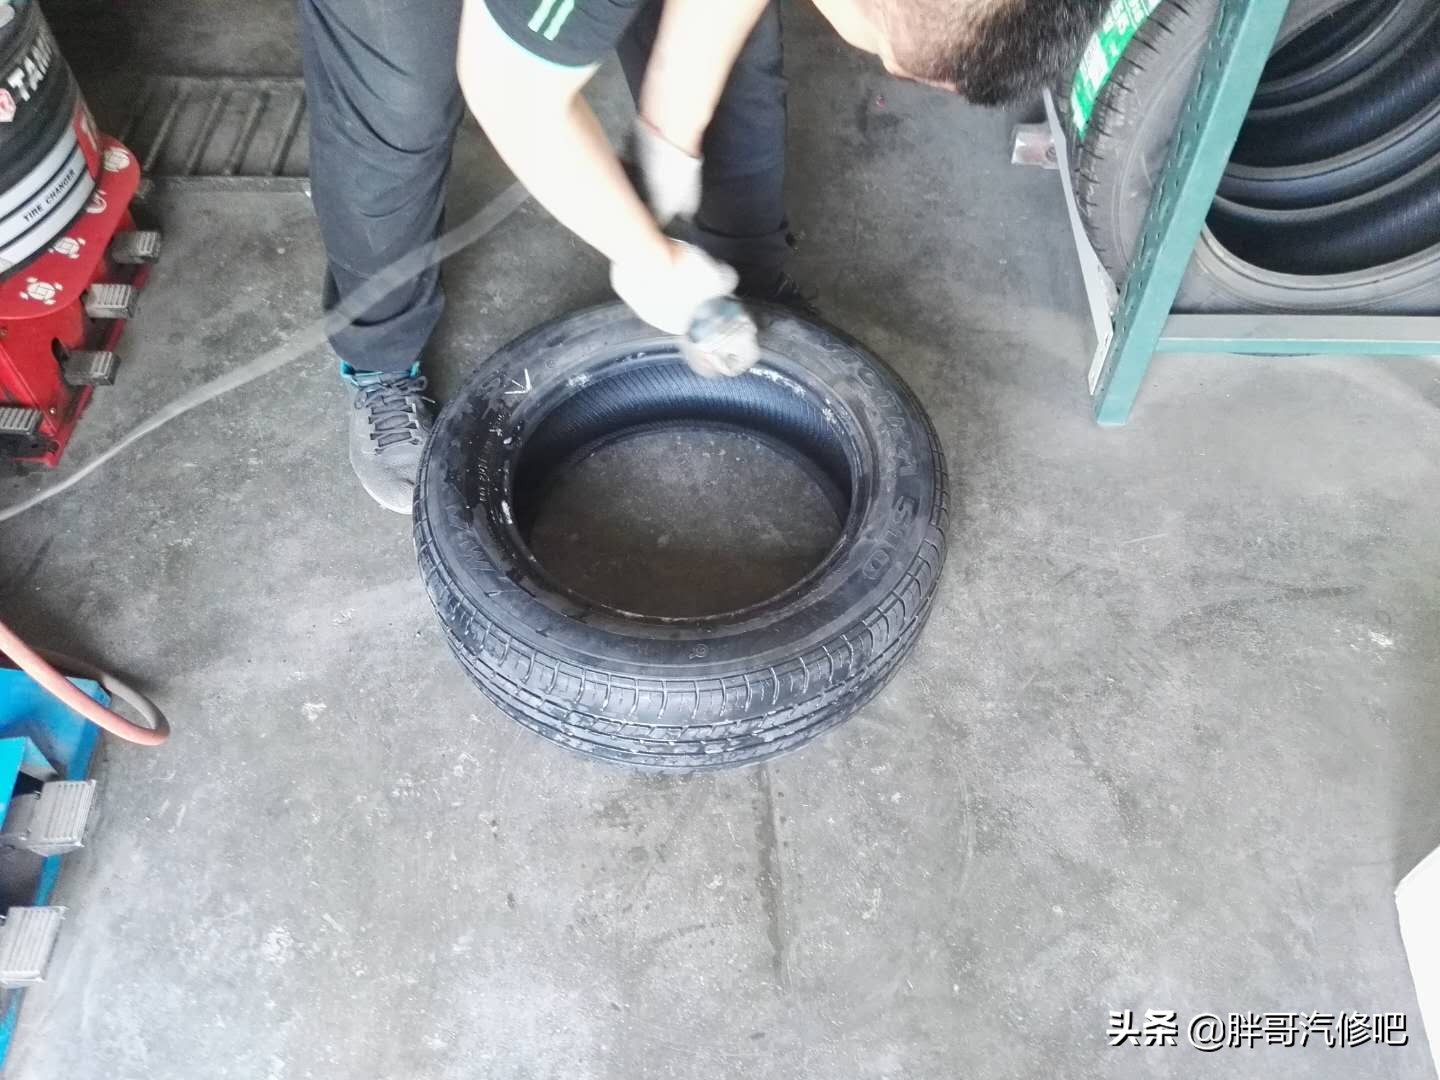 图片[6]_轮毂氧化腐蚀 造成车辆轮胎慢性漏气 轮胎师傅专业处理_5a汽车网